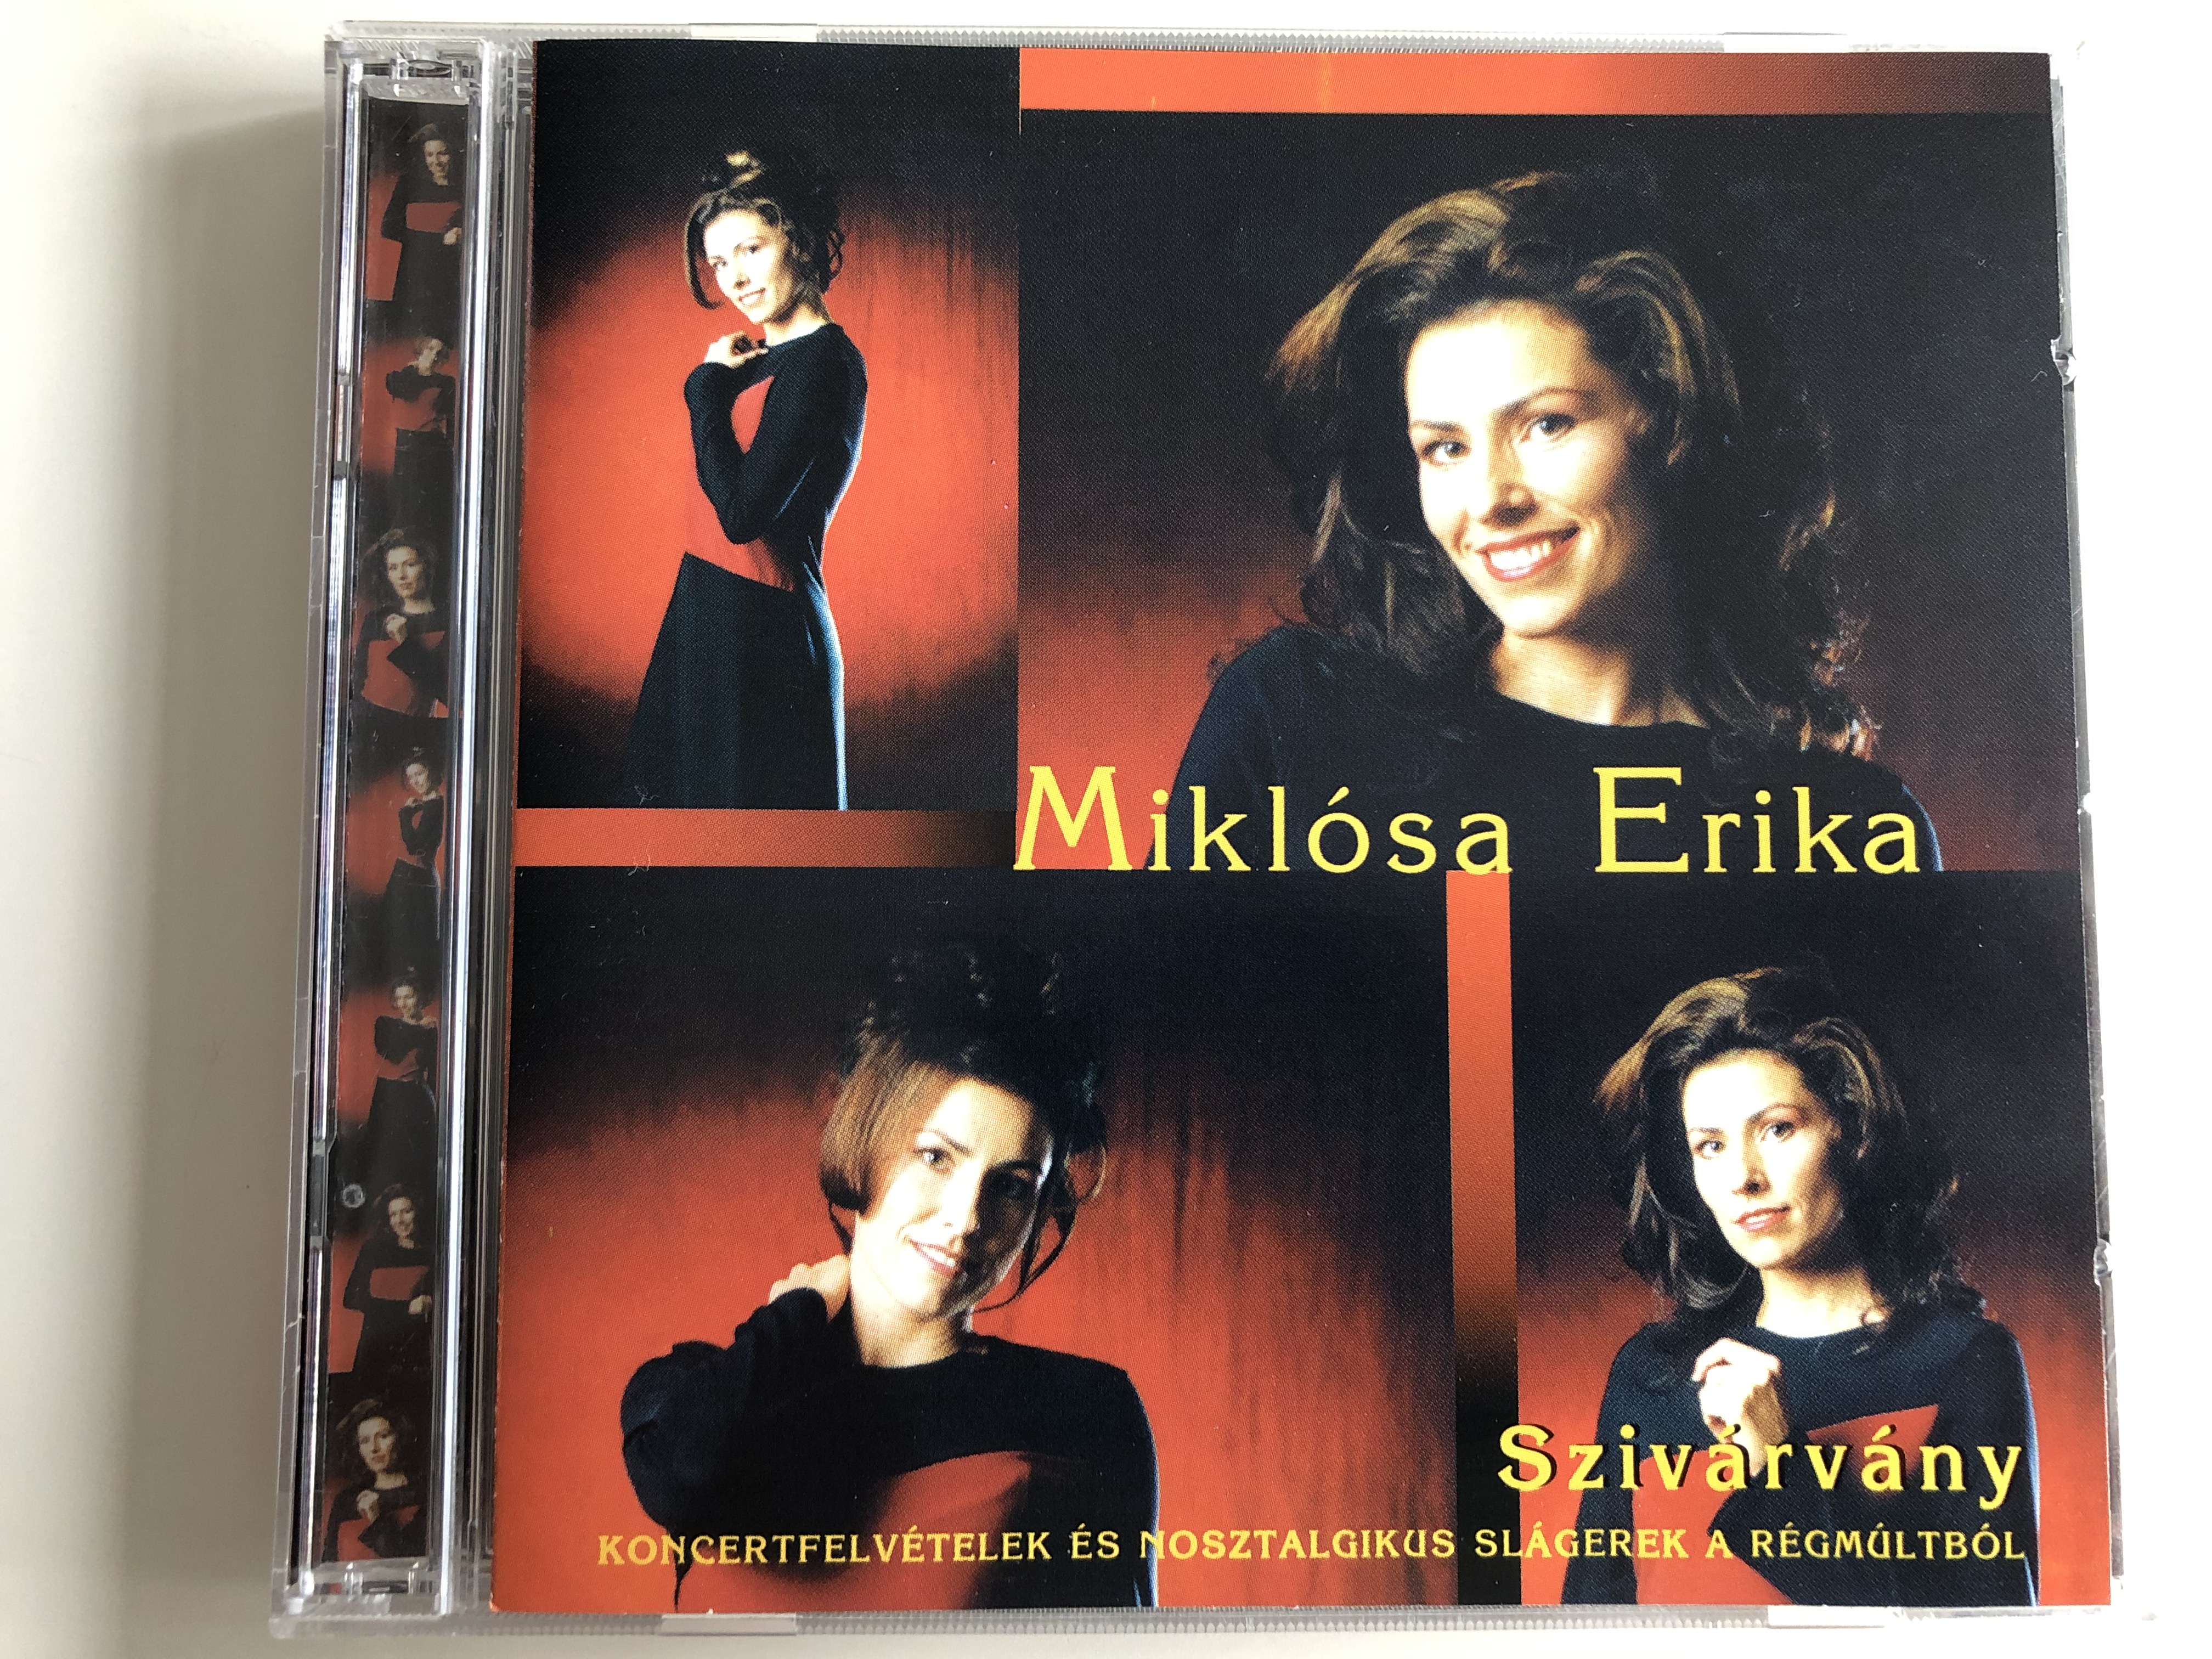 mikl-sa-erika-sziv-rv-ny-koncertfelvetelek-es-nosztalgikus-slagerek-a-regmultbol-tanagra-koncert-bt.-2x-audio-cd-2000-z-2000-1-.jpg